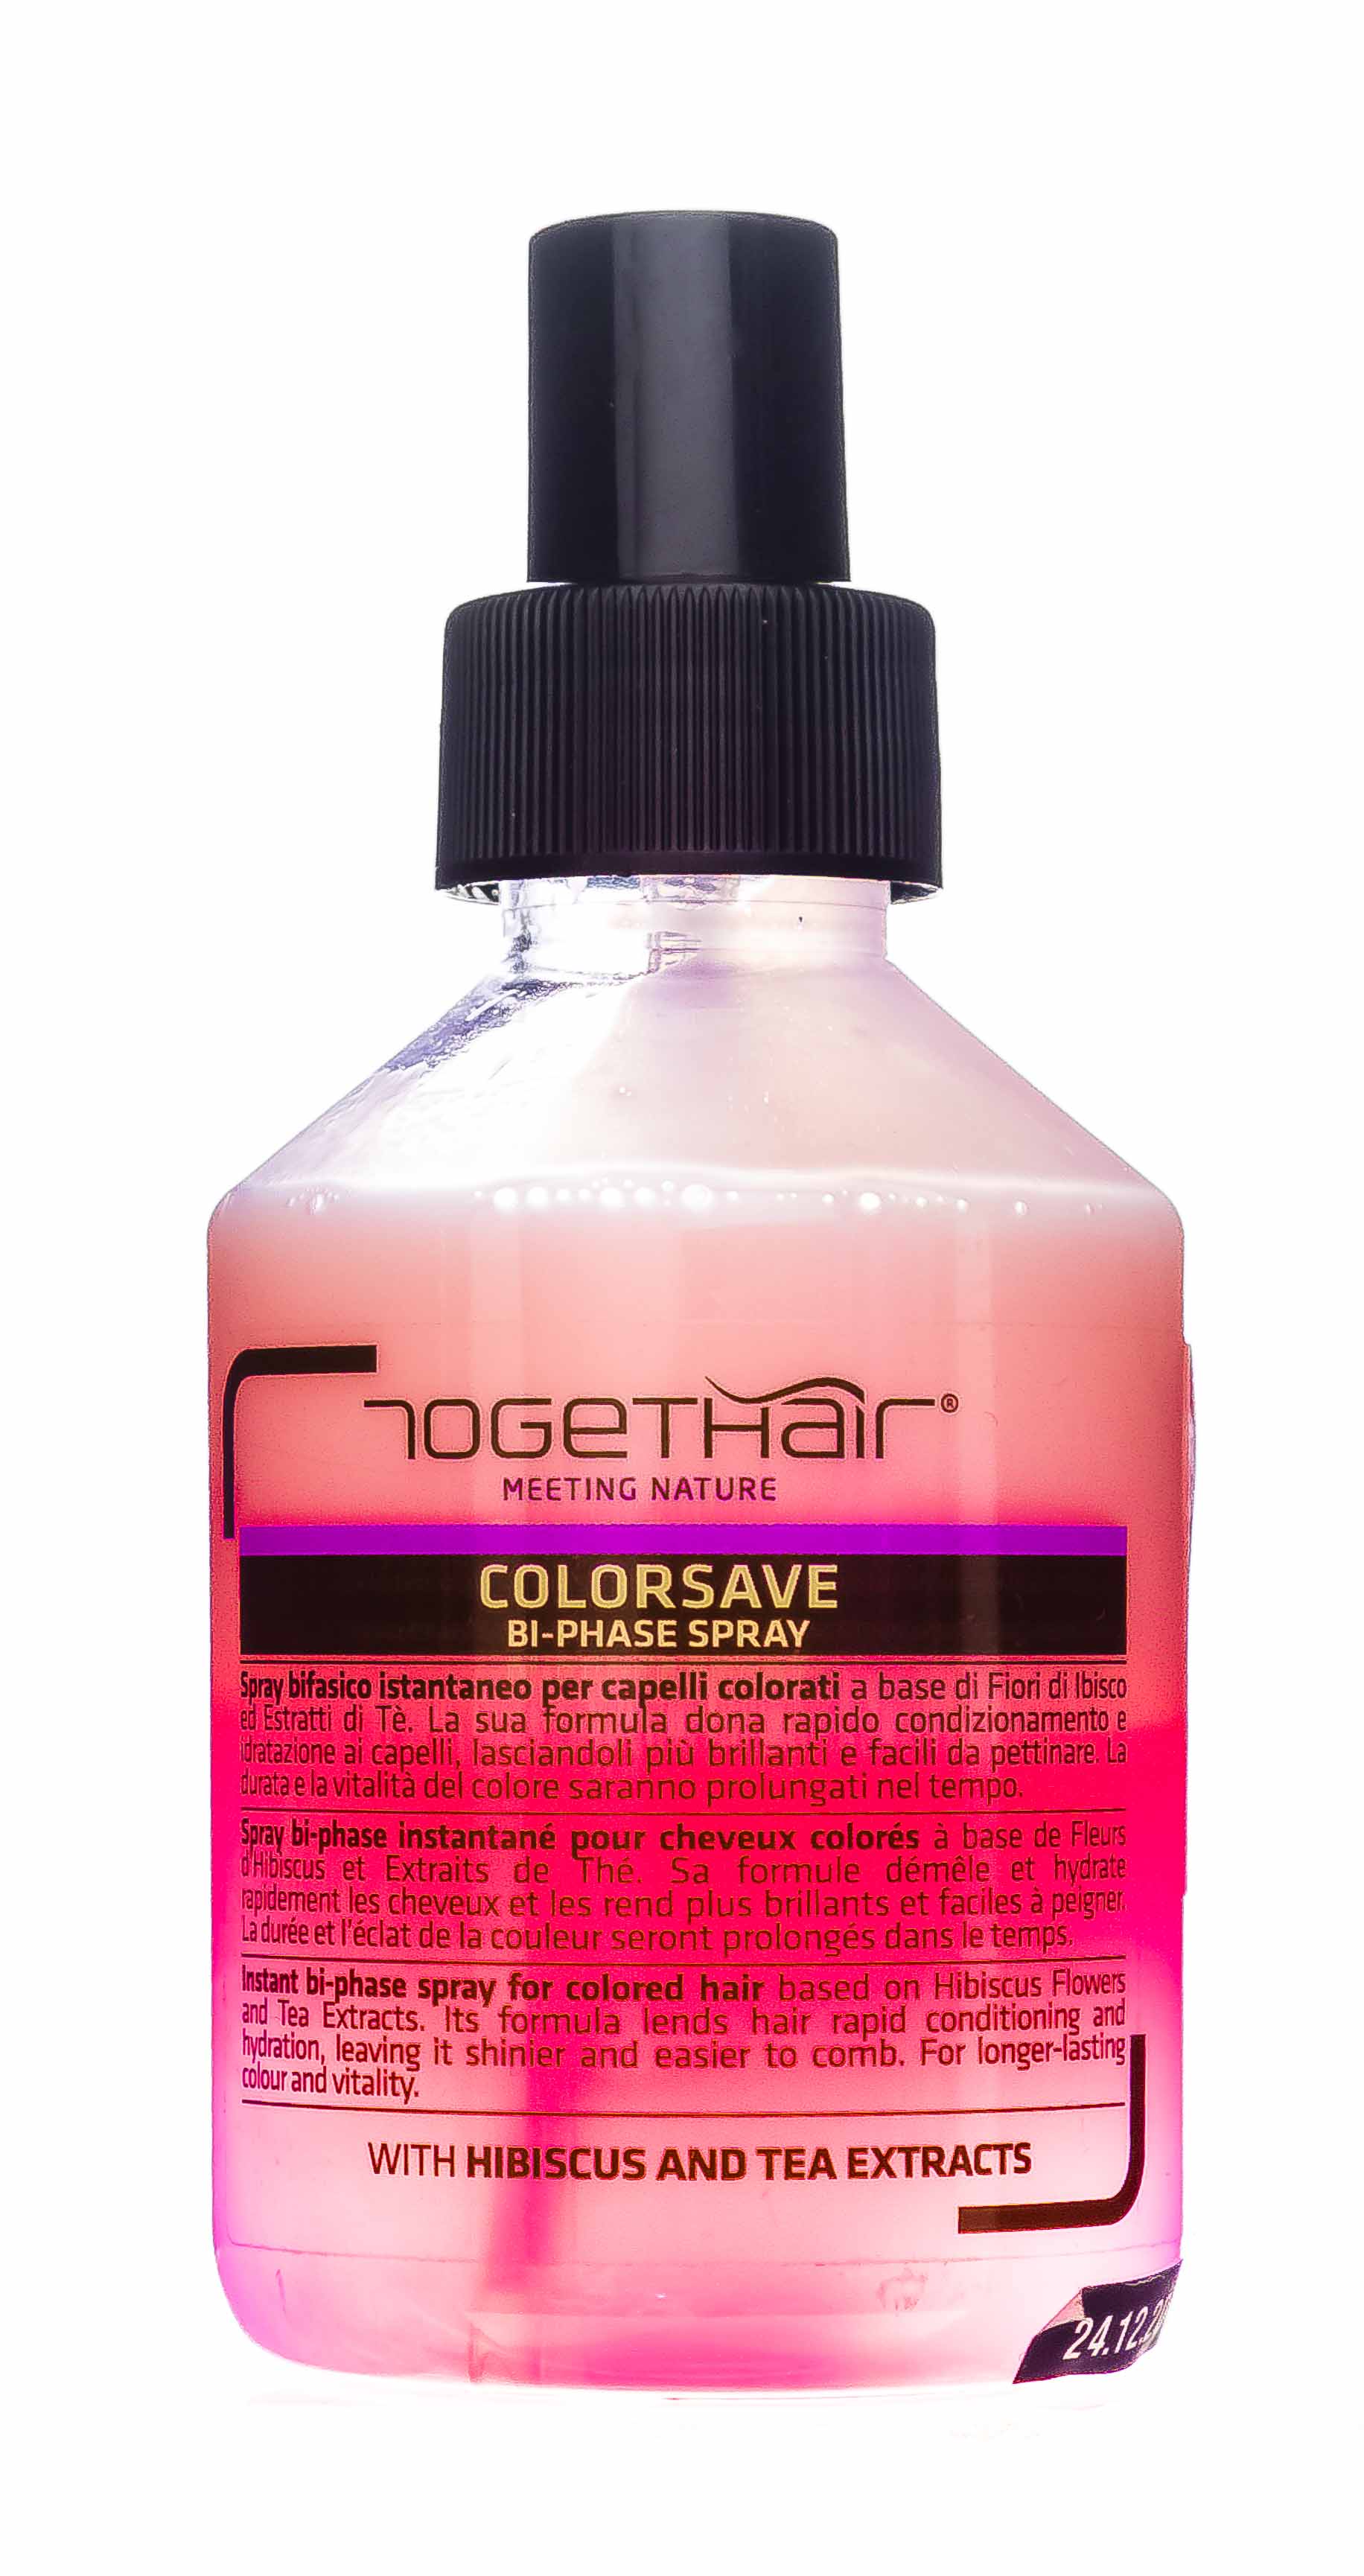 Togethair Двухфазный спрей для защиты цвета окрашенных волос, 200 мл (Togethair, Colorsave) двухфазный спрей для защиты цвета окрашенных волос togethair colorsave bi phase spray 200 мл